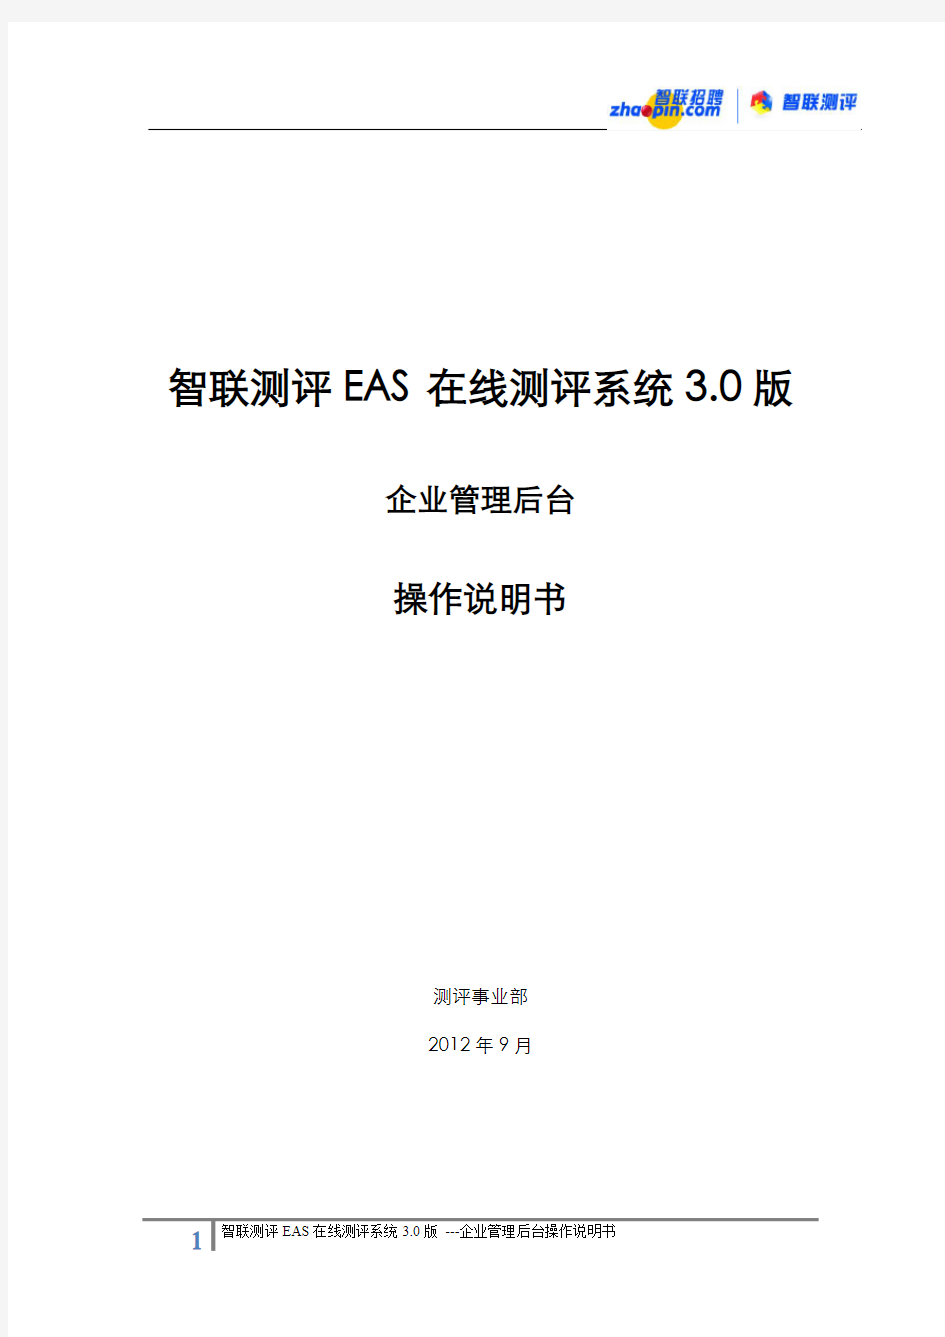 智联测评EAS在线测评系统3.0版-操作说明